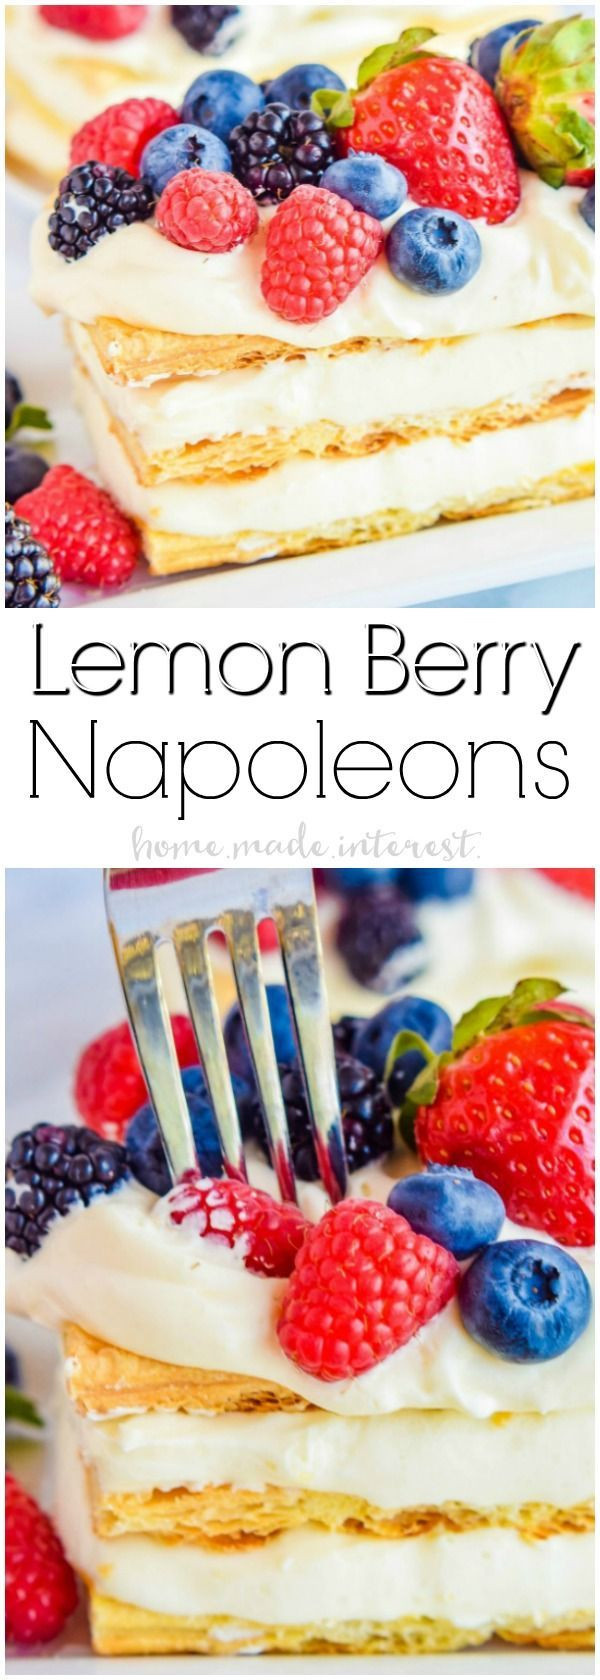 Summer Lemon Desserts
 Lemon Berry Napoleons